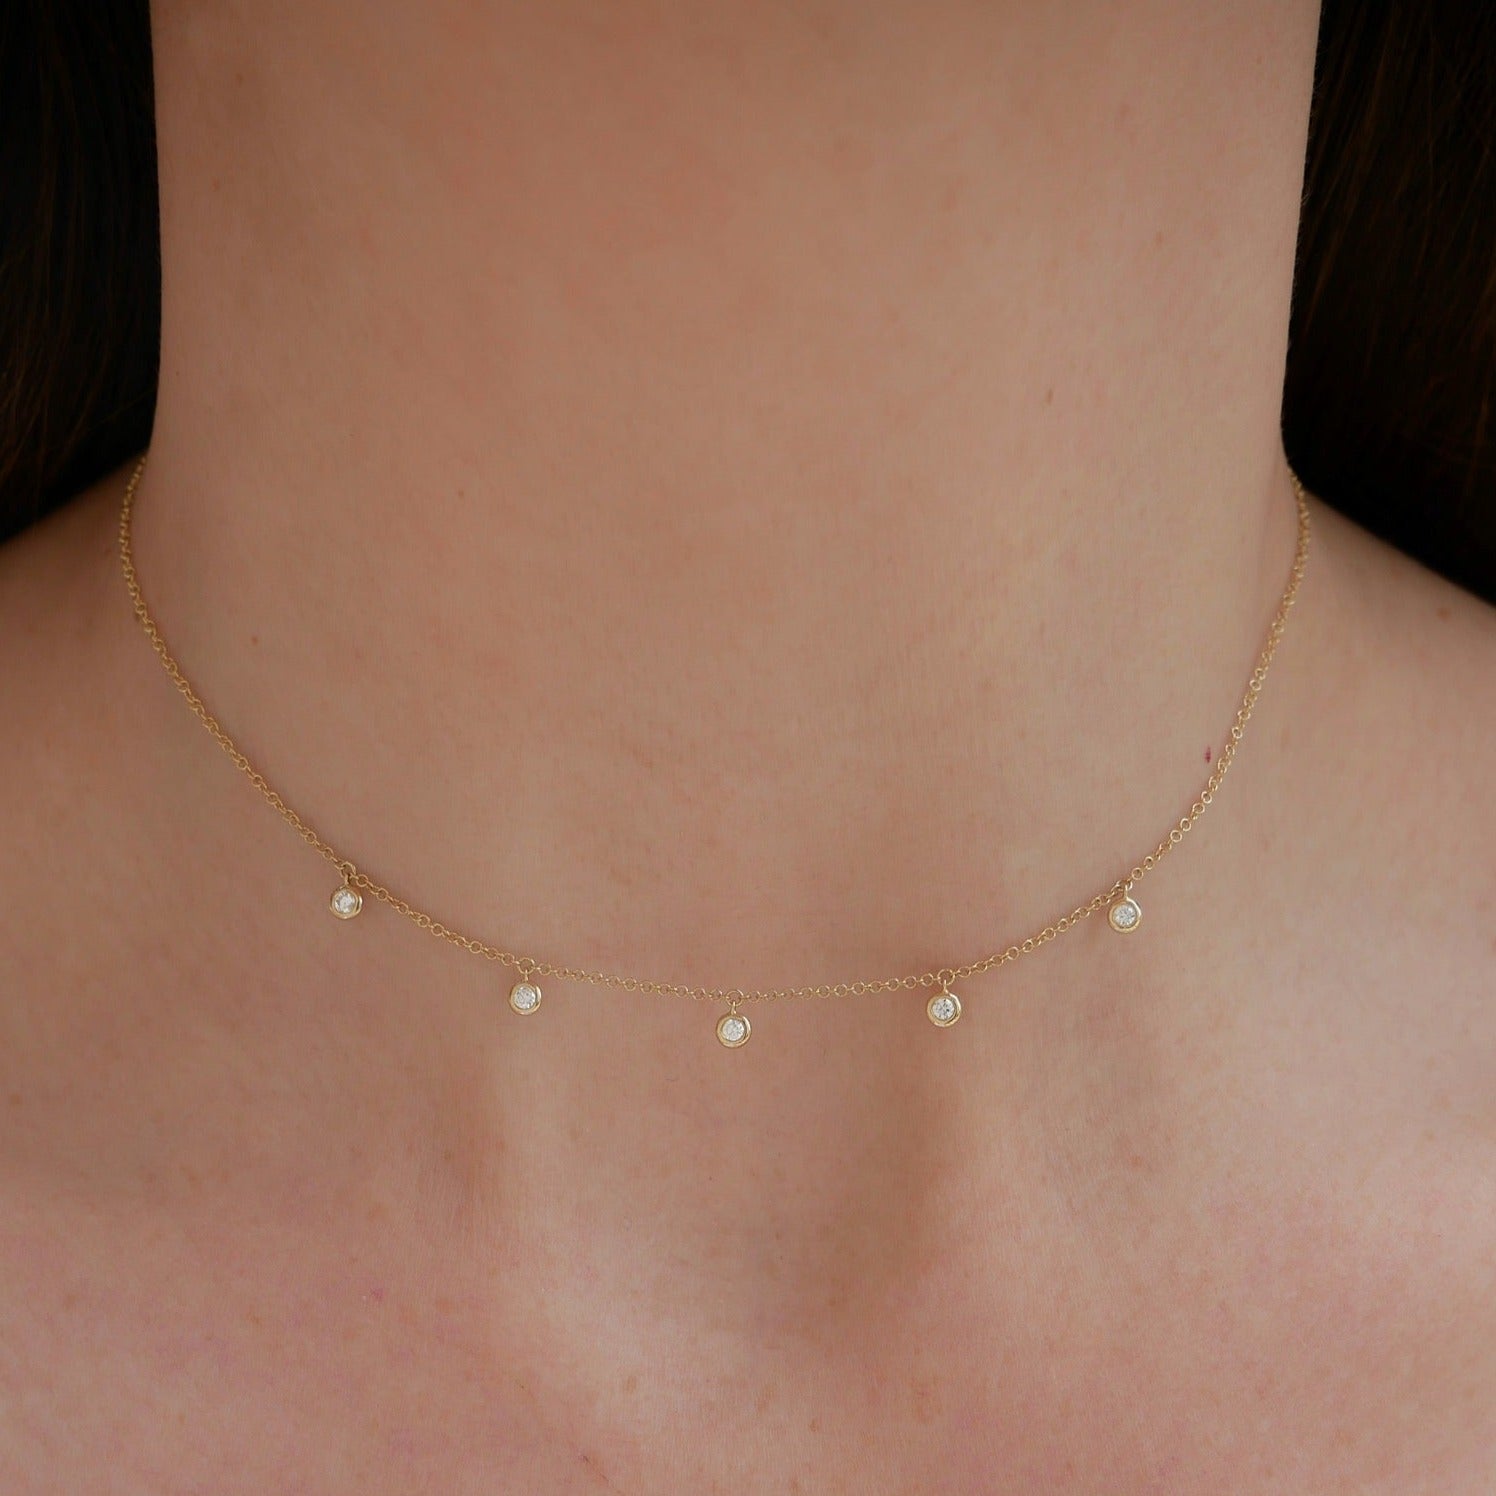 5 Diamond Bezel Choker Necklace